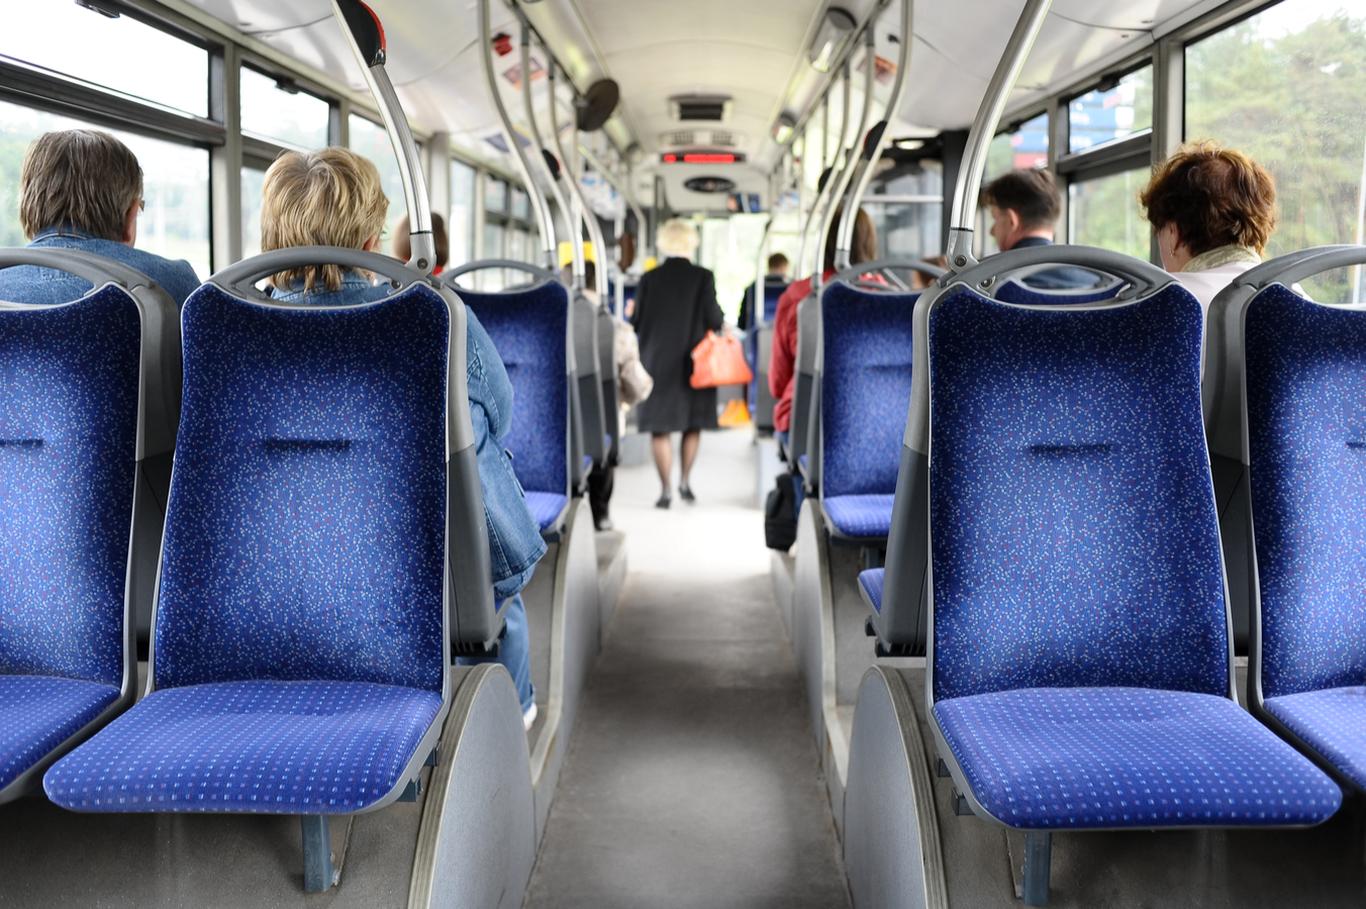 TALLINNA LINNATRANSPORDI AS  kuulutas välja riigihanke, millega ostab 100 uut linnaliinibussi, võimalusega osta sama lepingu raames veel lisaks 100 bussi. Hanke